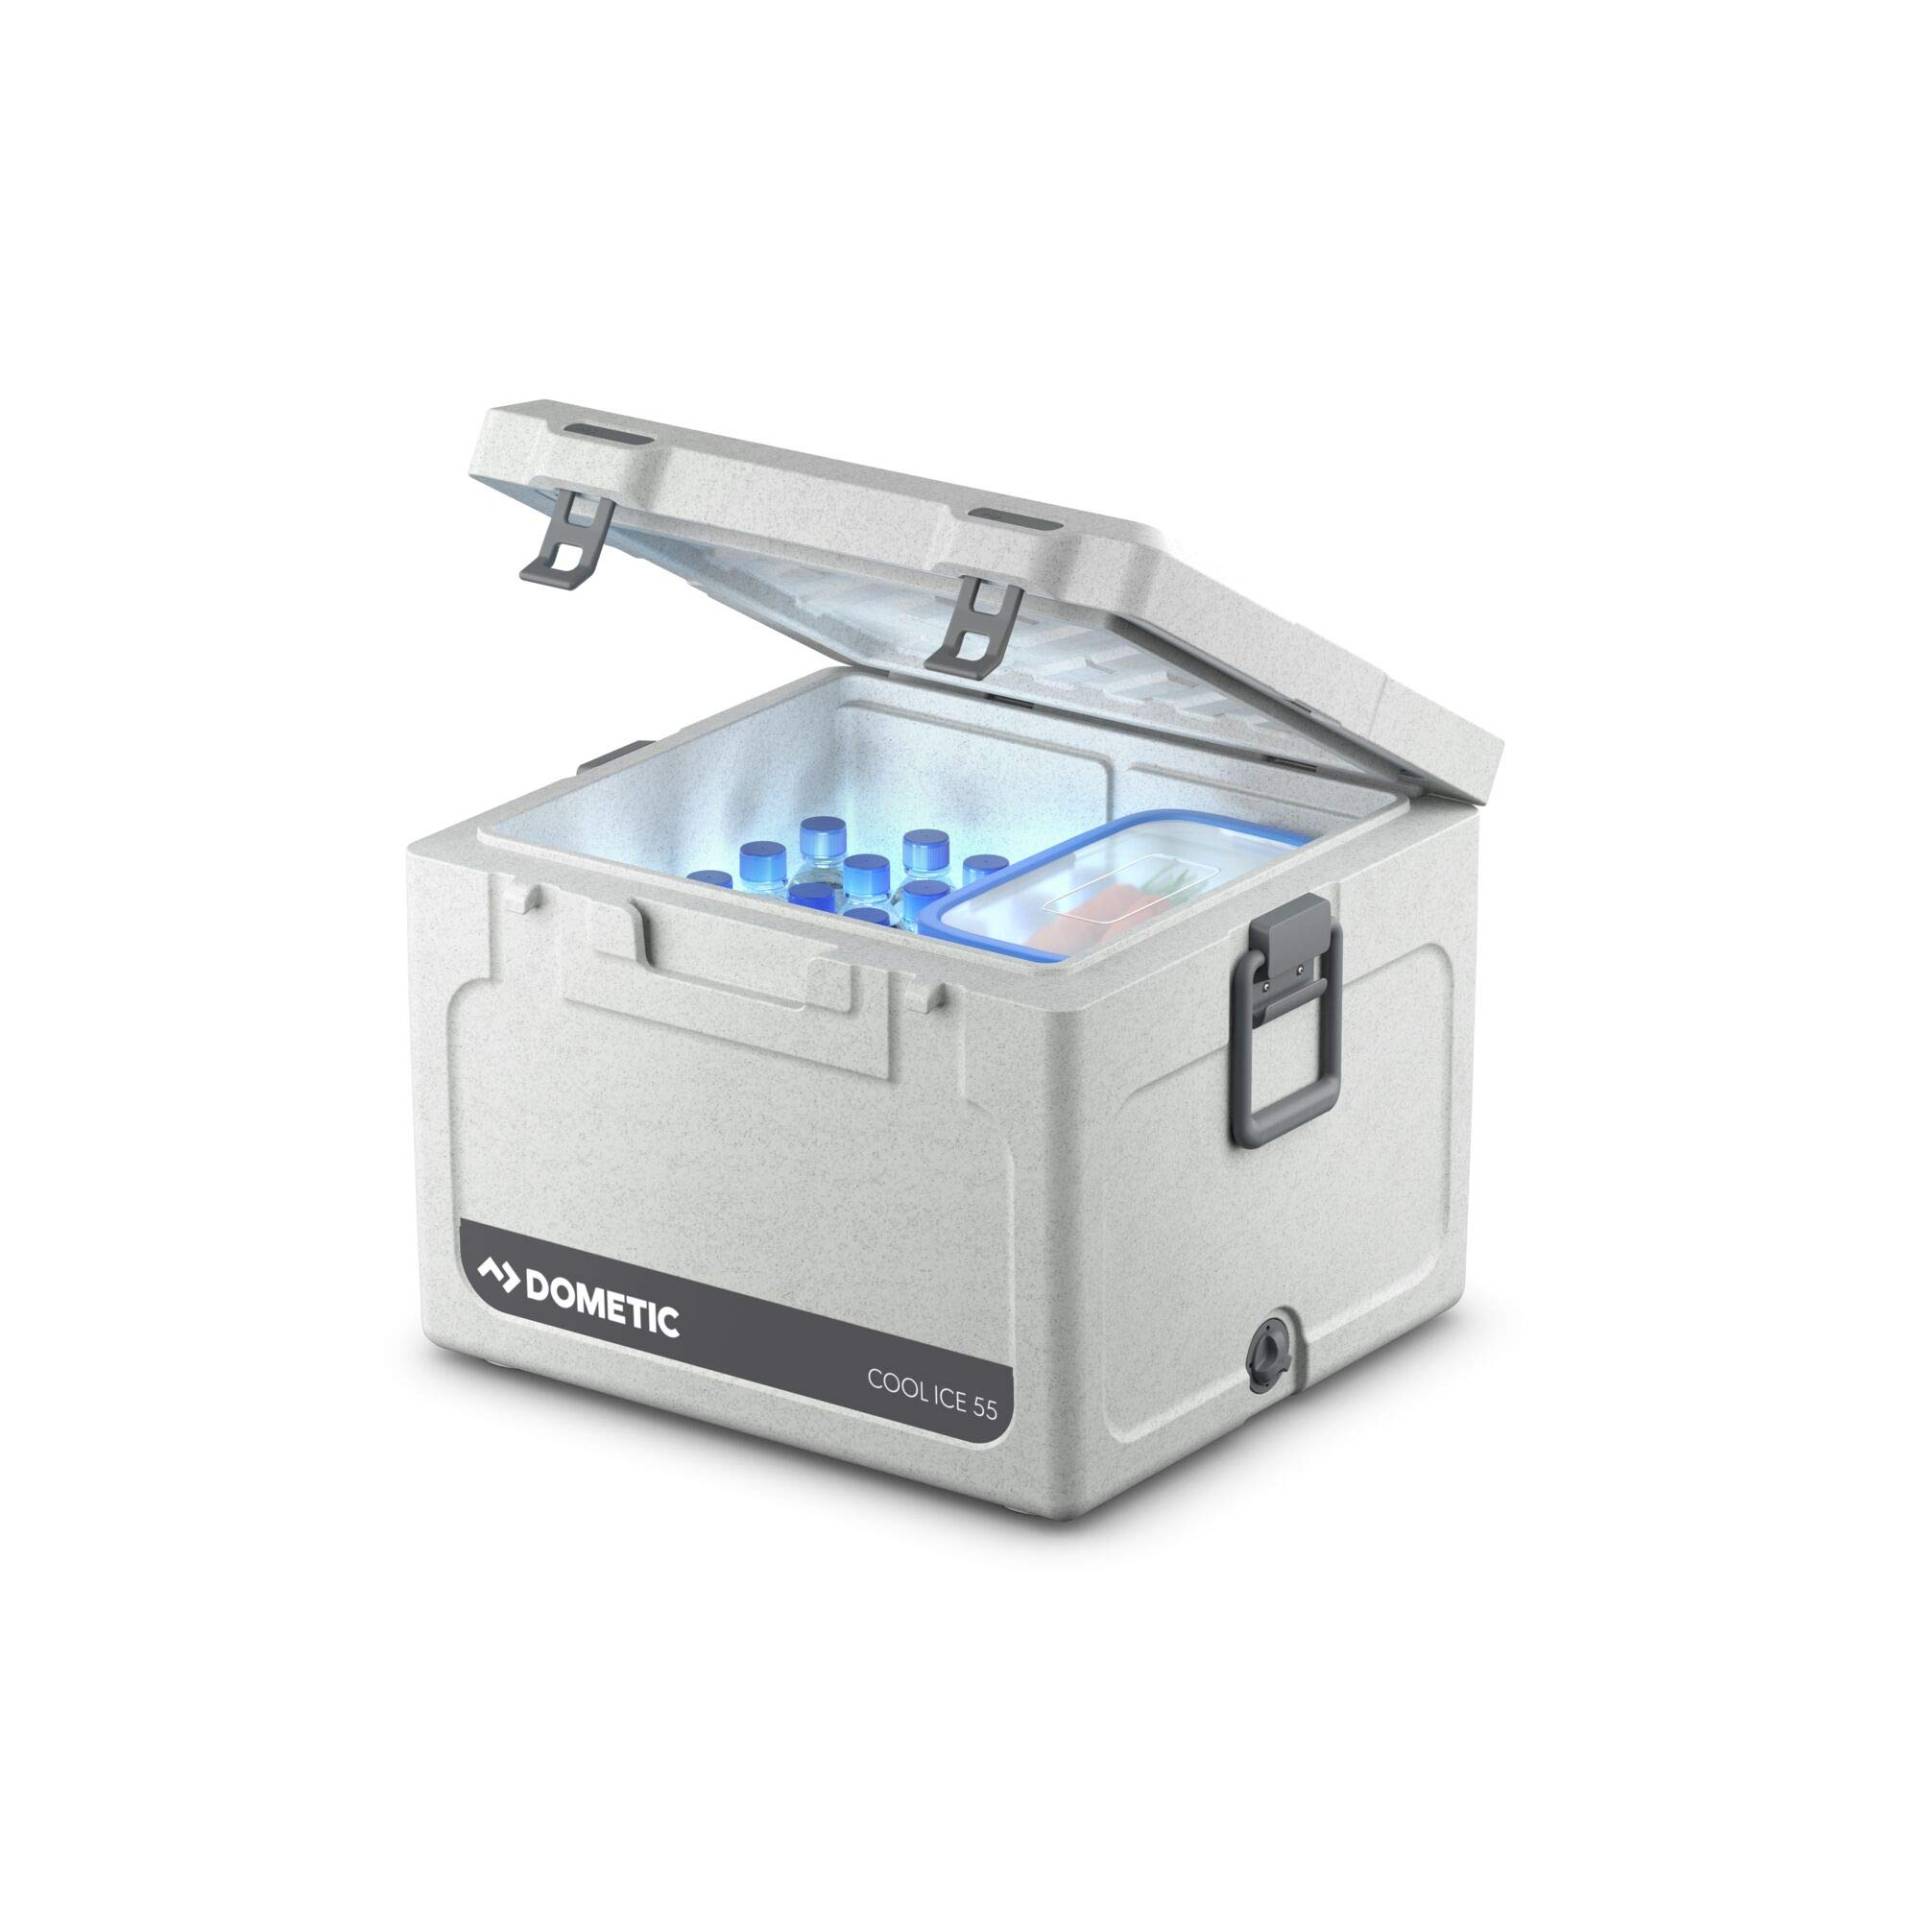 DOMETIC Cool-Ice CI 55, tragbare Passiv-Kühlbox / Eisbox, 56 Liter, für Auto, Lkw, Boot oder Camping, Ideal für Angler und Jäger von DOMETIC